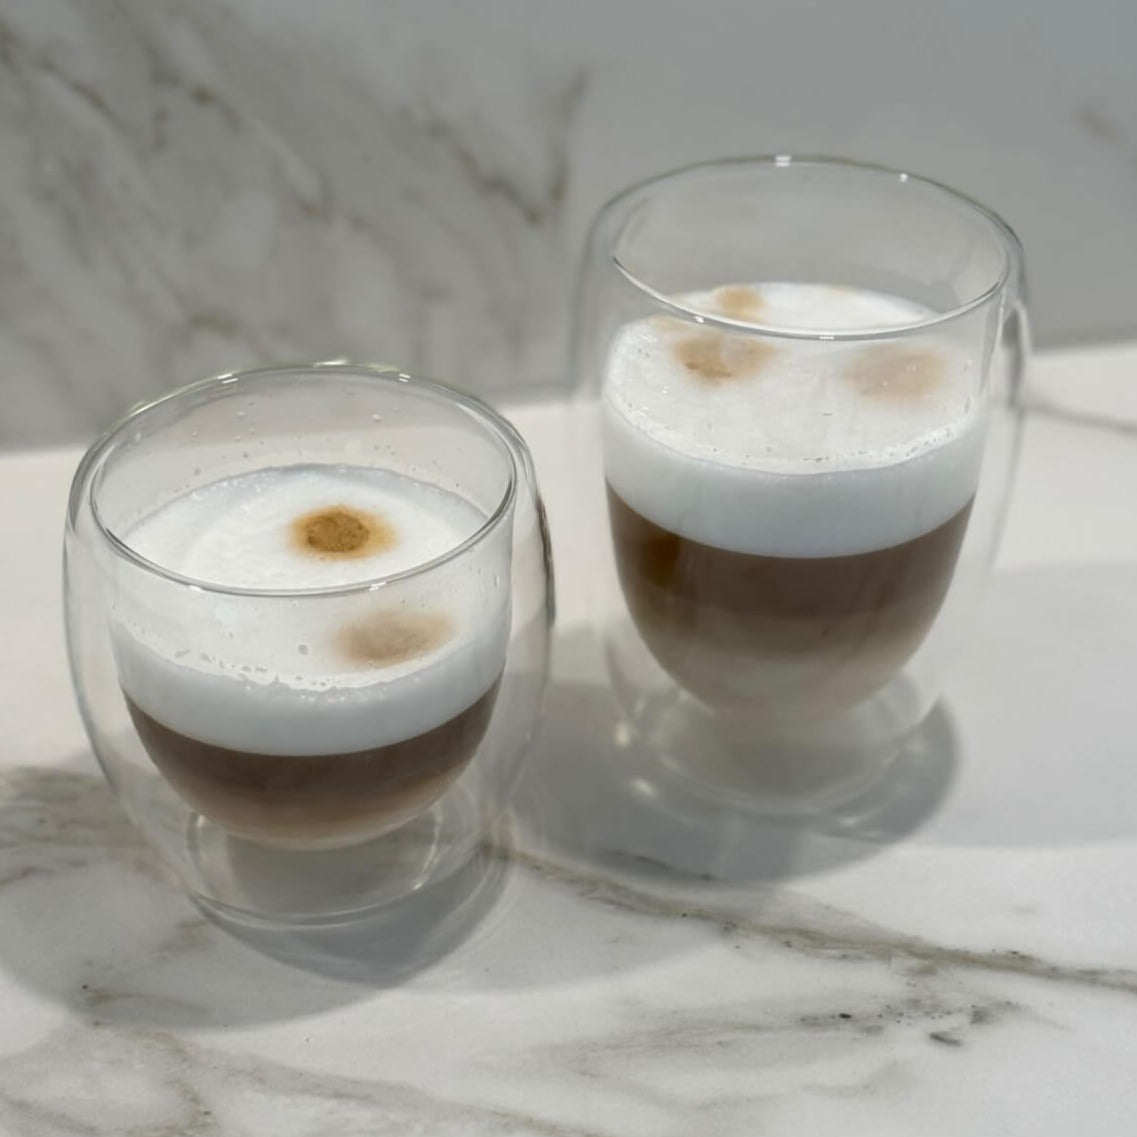 Unser Double Wall Glas 350ml mit doppelwandigem Design, gefüllt mit Cappuccino, auf einem Tisch. Dieses hochwertige, stilvolle und modern designte Trinkglas bietet ein einzigartiges, ästhetisches Trinkgefühl. Perfekt für kalte und heiße Getränke, wie Kaffee und Cappuccino. Ein attraktiver und edler Blickfang, der Luxus und Eleganz in jede Umgebung bringt. Ideal für den täglichen Genuss oder besondere Anlässe.